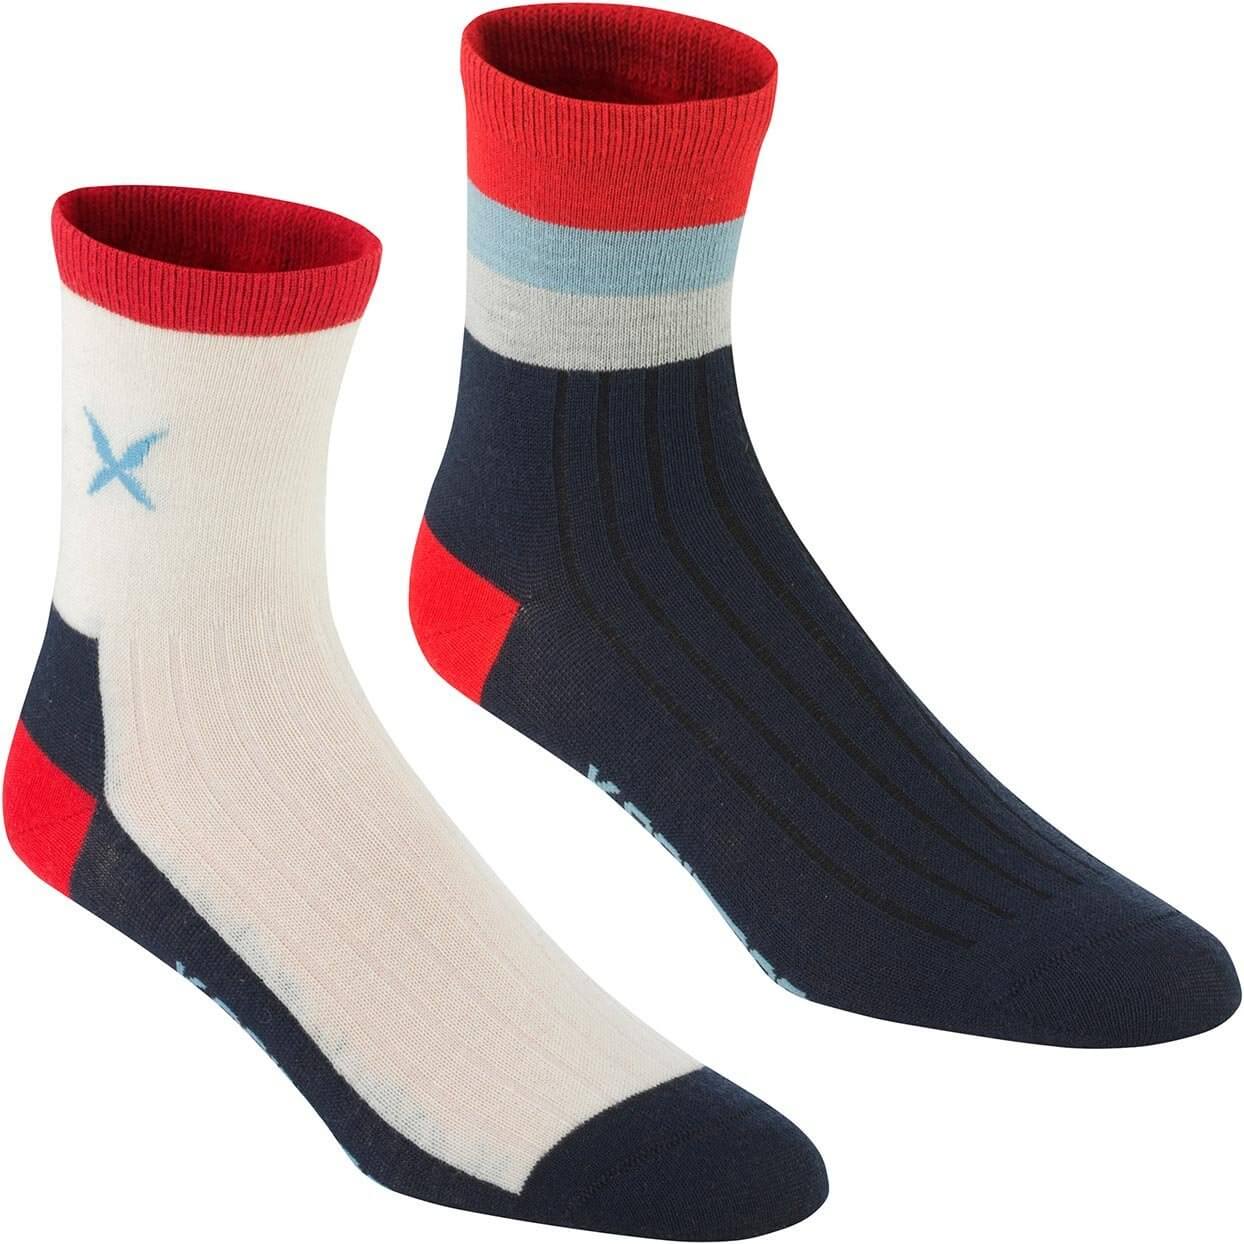 Dámské sportovní ponožky Kari Traa Storetå Sock 2pk